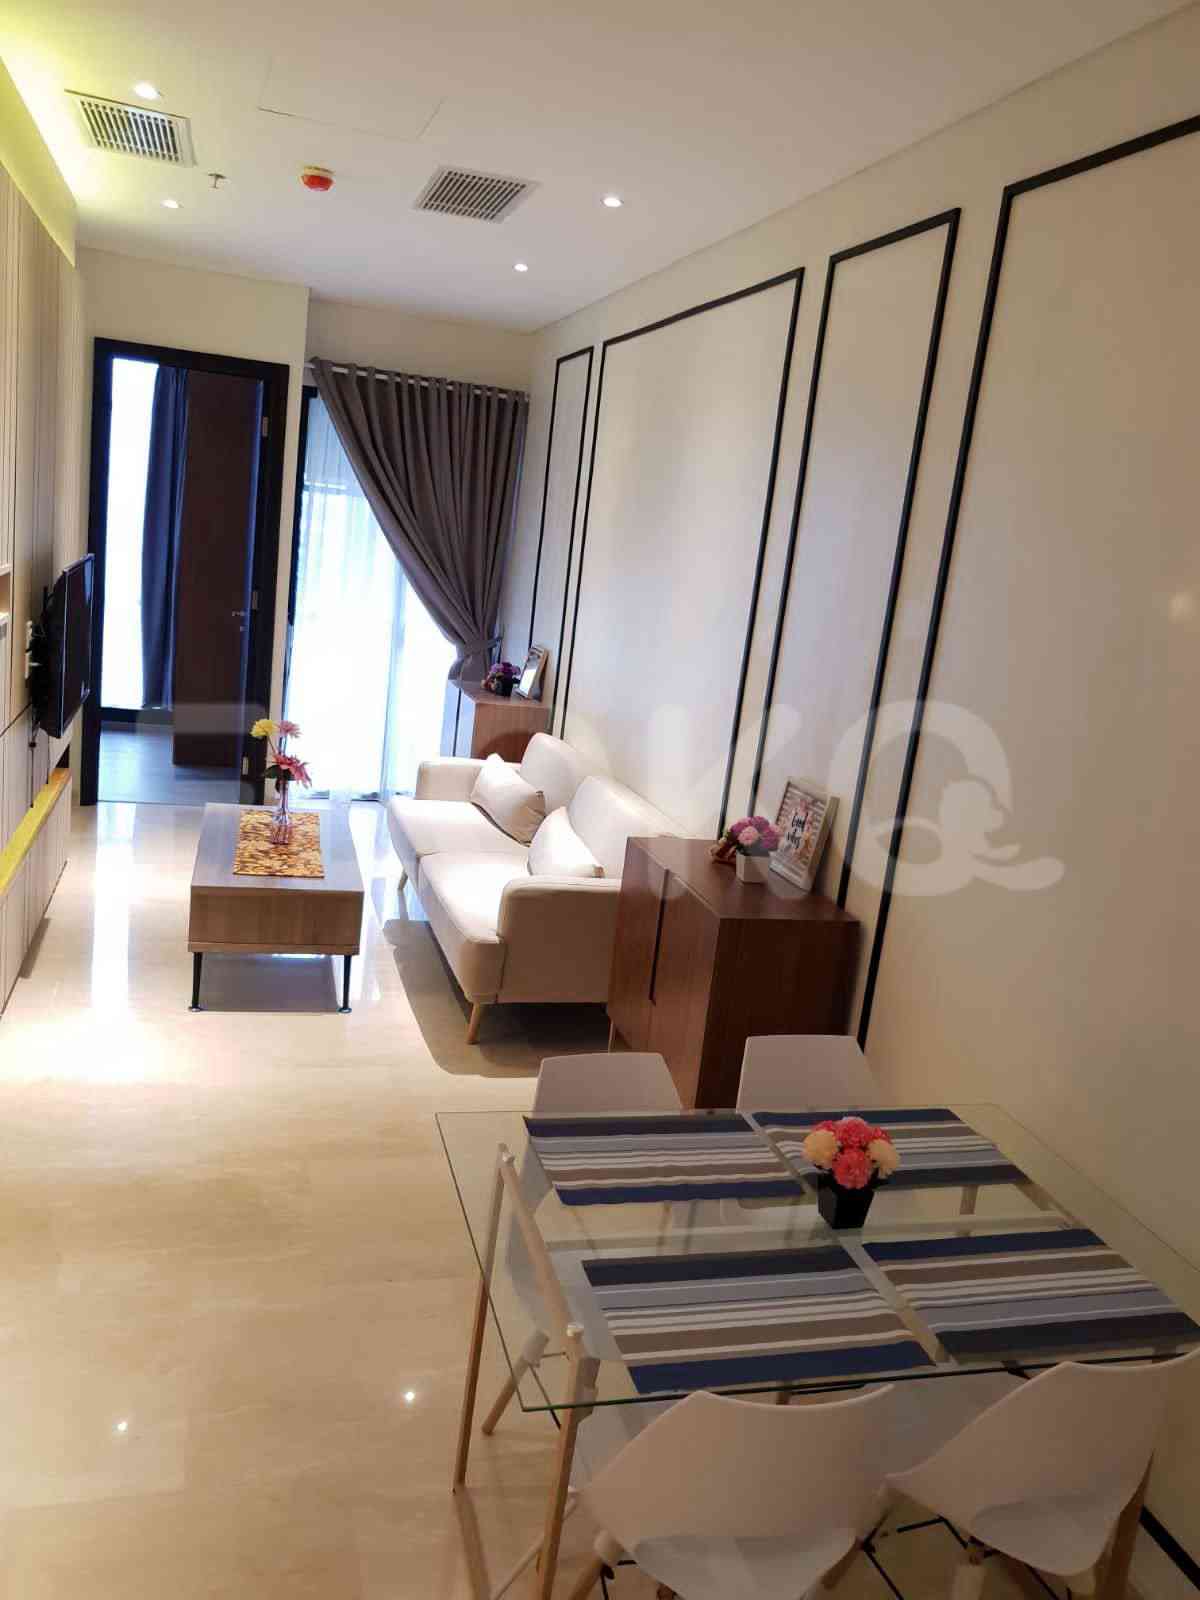 2 Bedroom on 6th Floor for Rent in Sudirman Suites Jakarta - fsud5c 5